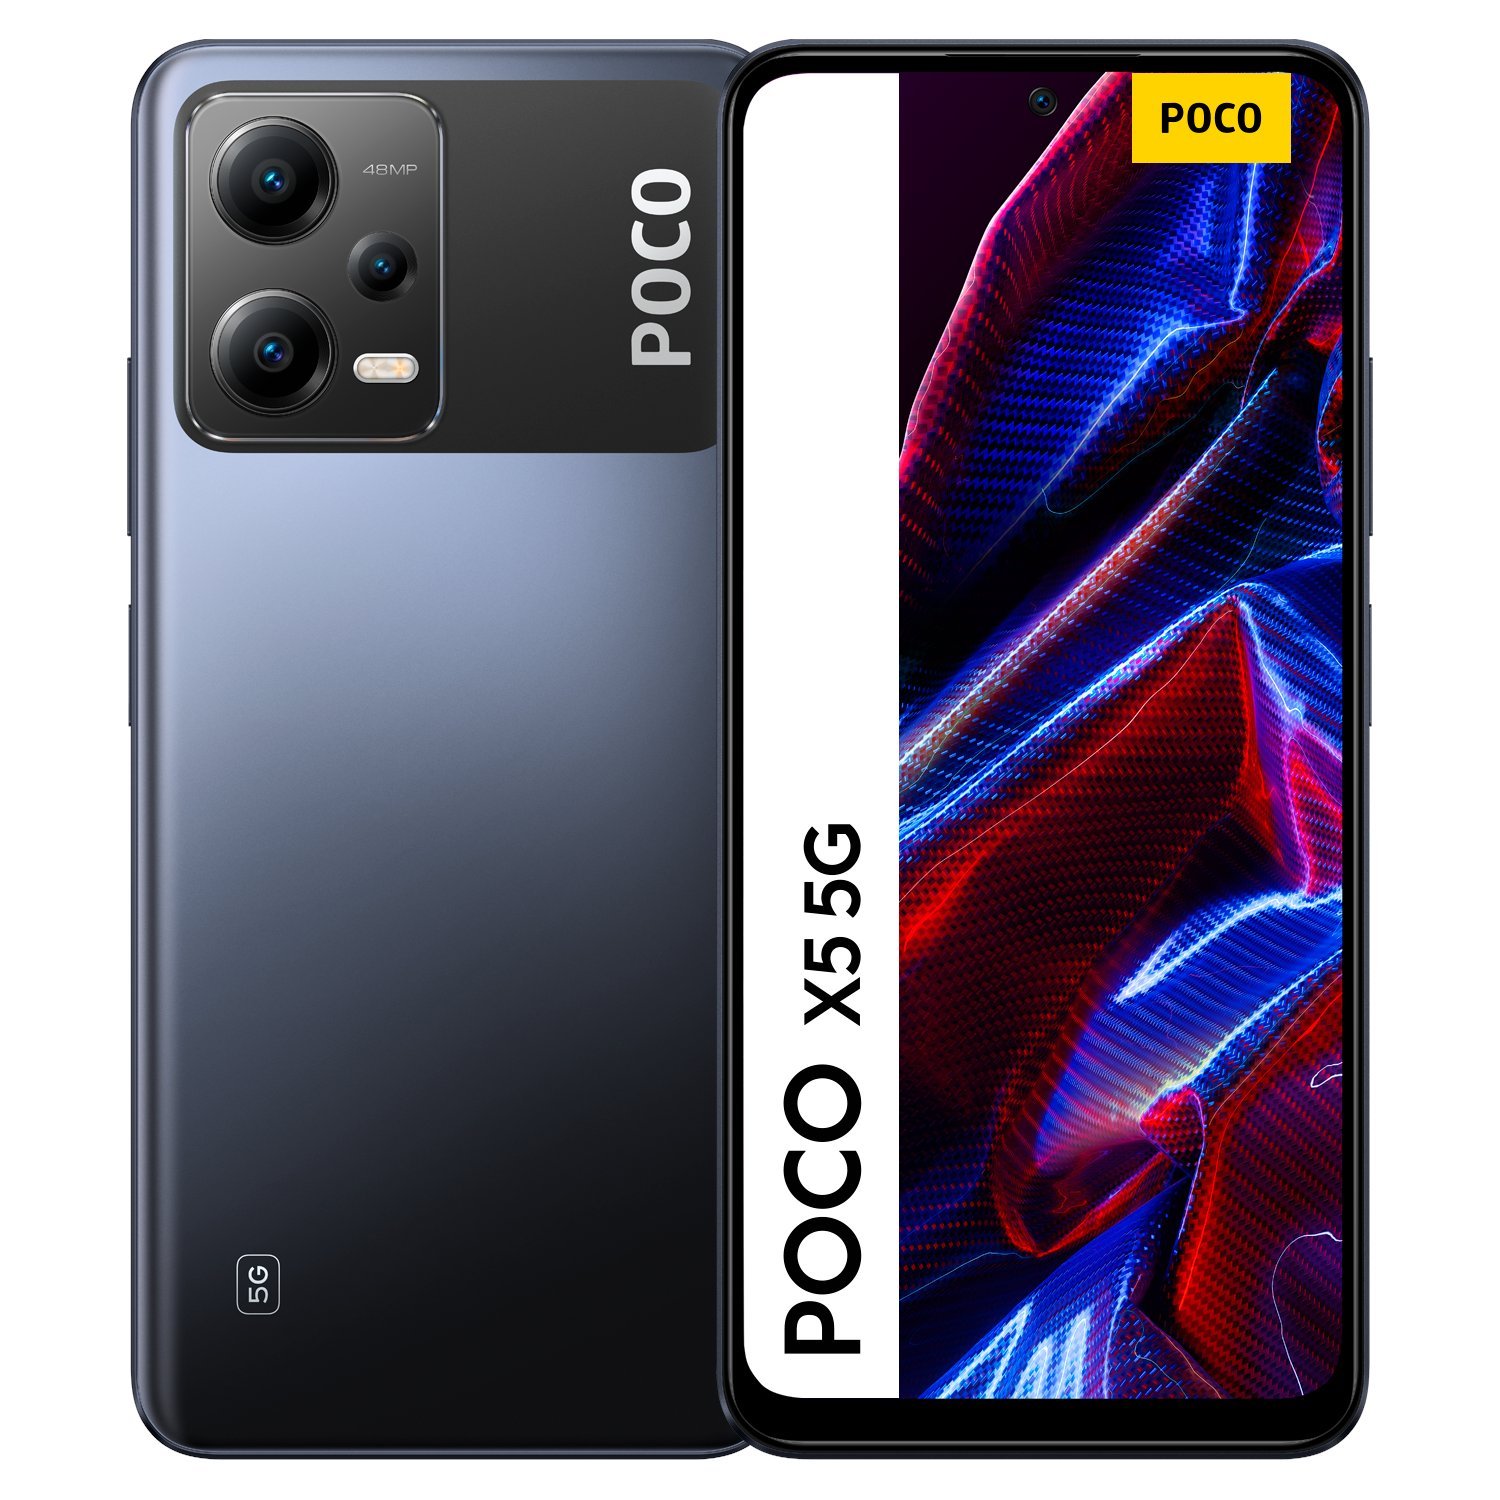 Європейські ціни на Poco X5 і X5 Pro були визначені напередодні запуску 6 лютого